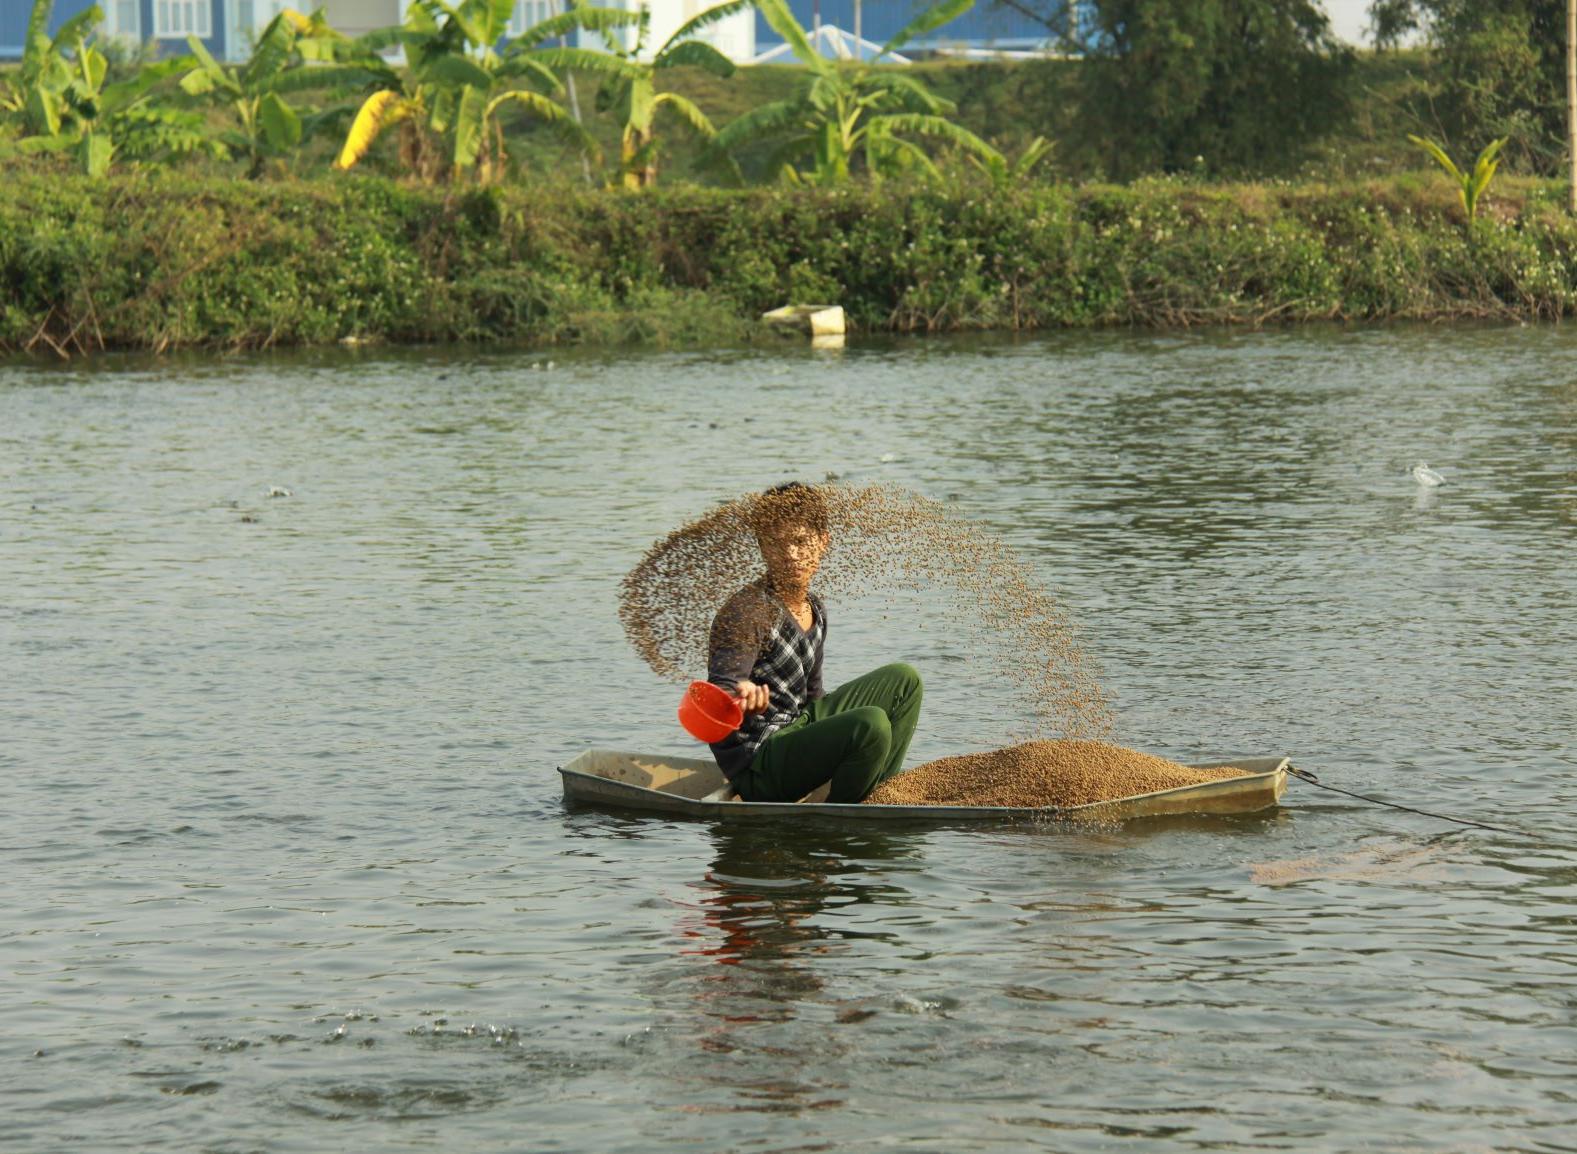 Nourissage des tilapias à Hai Duong, dans le delta du fleuve rouge au Nord du Vietnam - Photo: Tran Thi Nang Thu